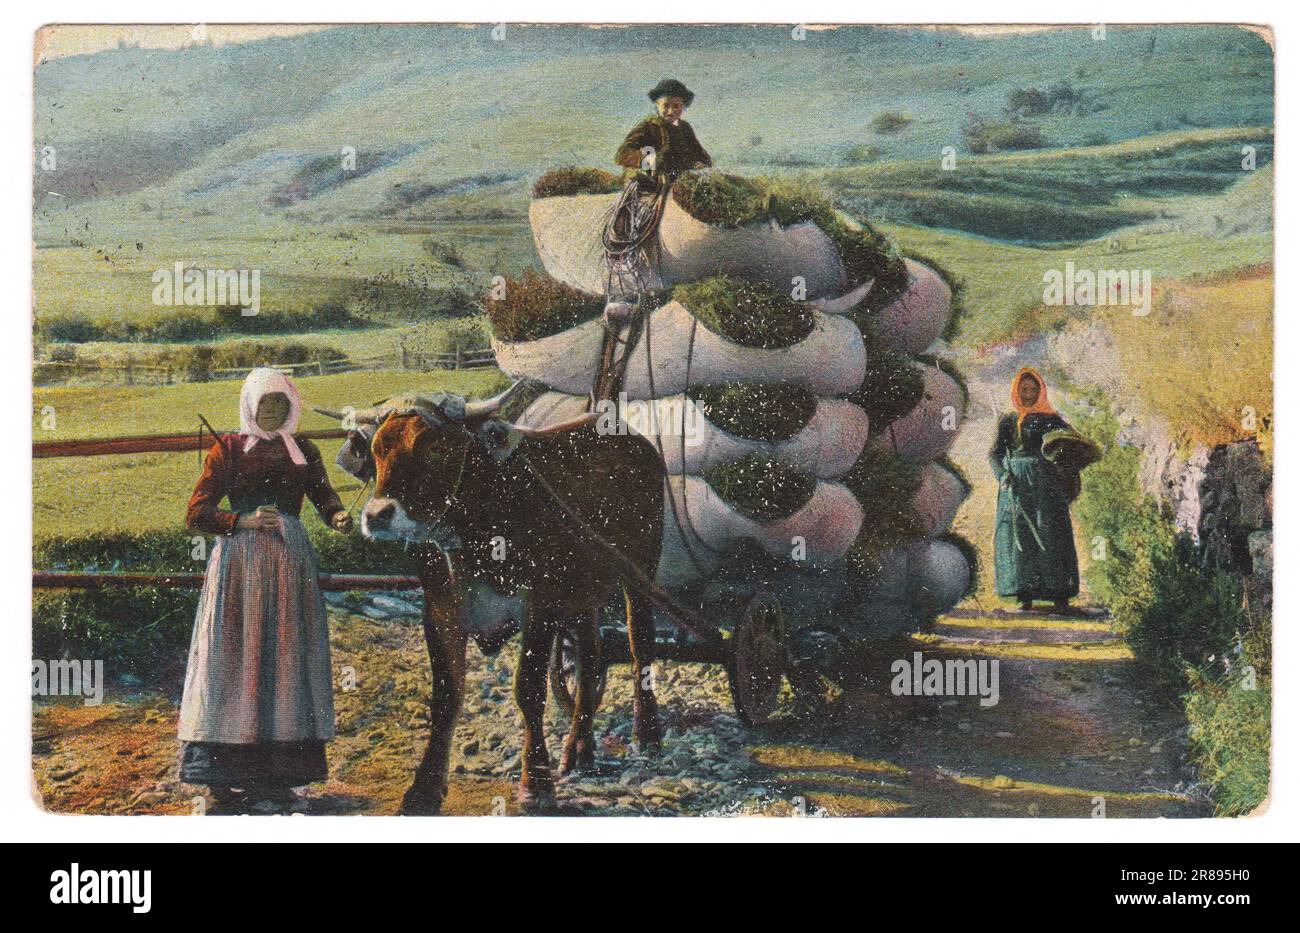 La carte postale vintage imprimée en 1908 représente des femmes paysannes suisses transportant du foin dans un chariot de boeuf. Région de la basse Engadine dans l'est des Alpes suisses dans le canton de GRA Banque D'Images